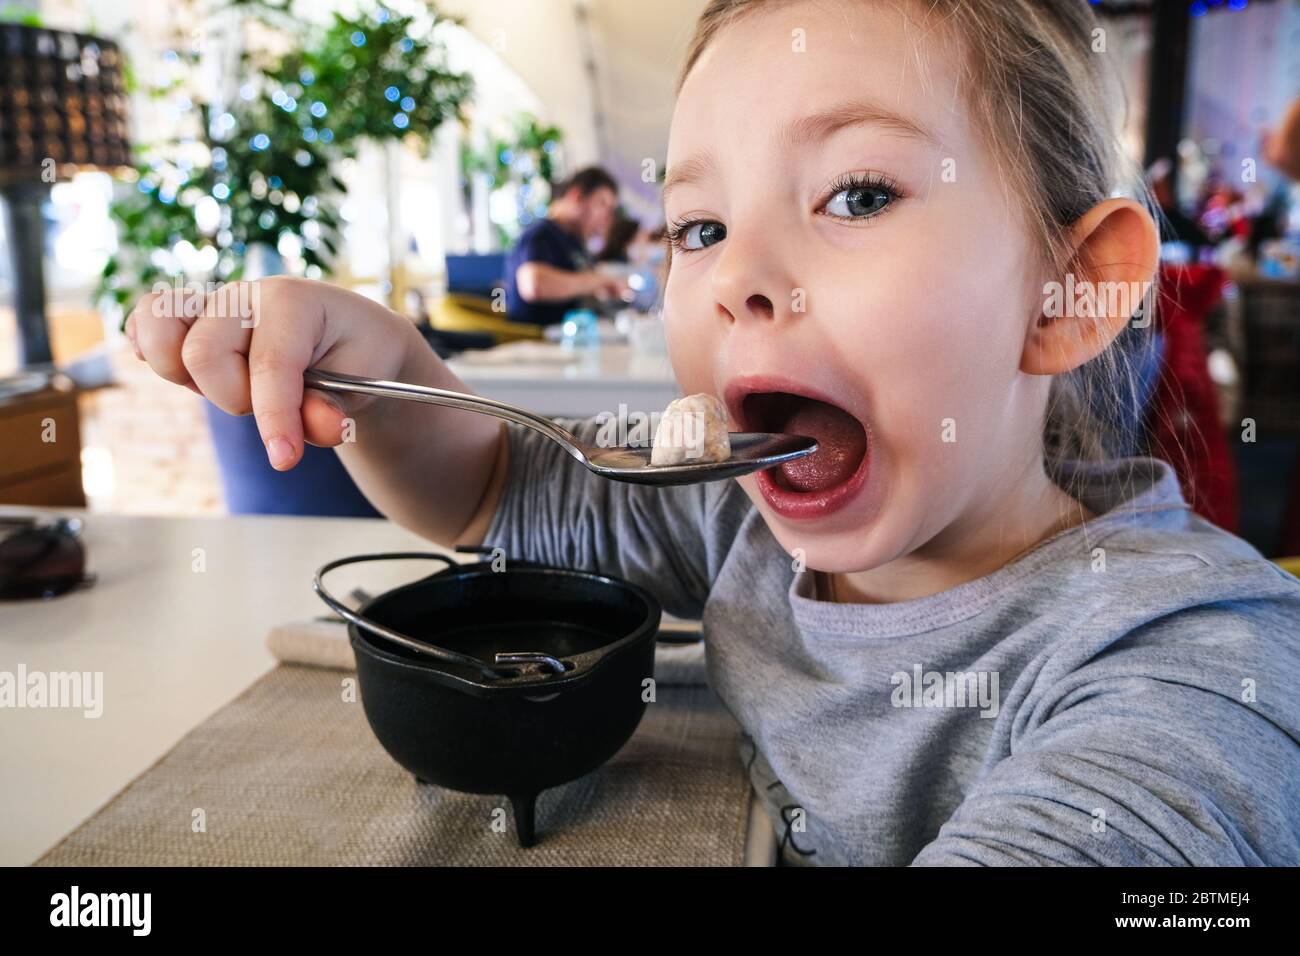 little girl eating dumpling in cafe Stock Photo